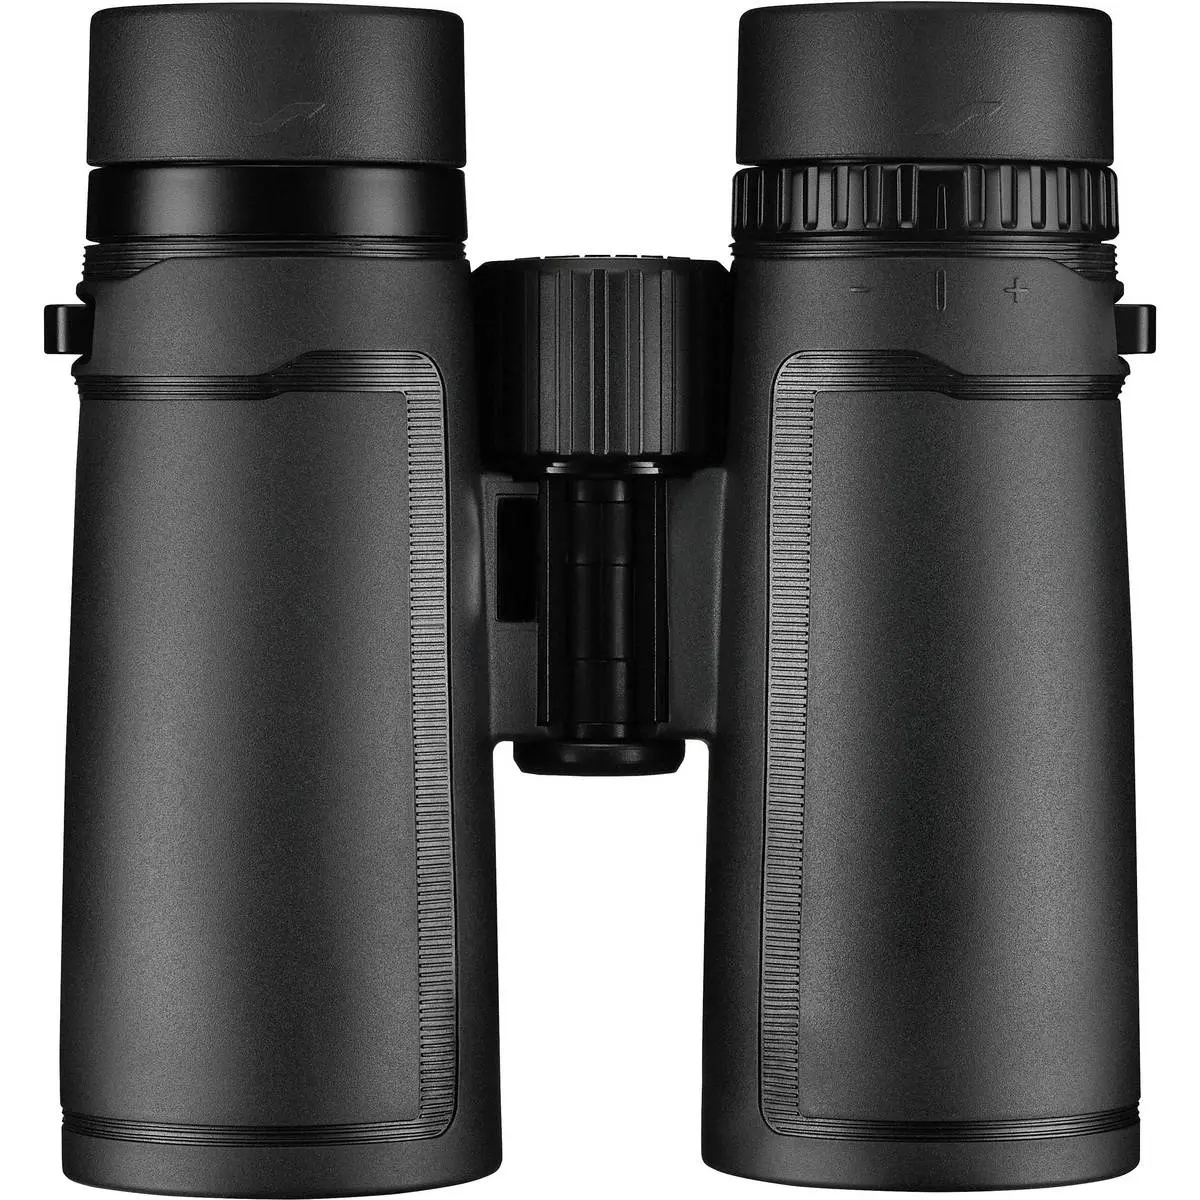 2. Olympus 10 X 42 PRO Binocular